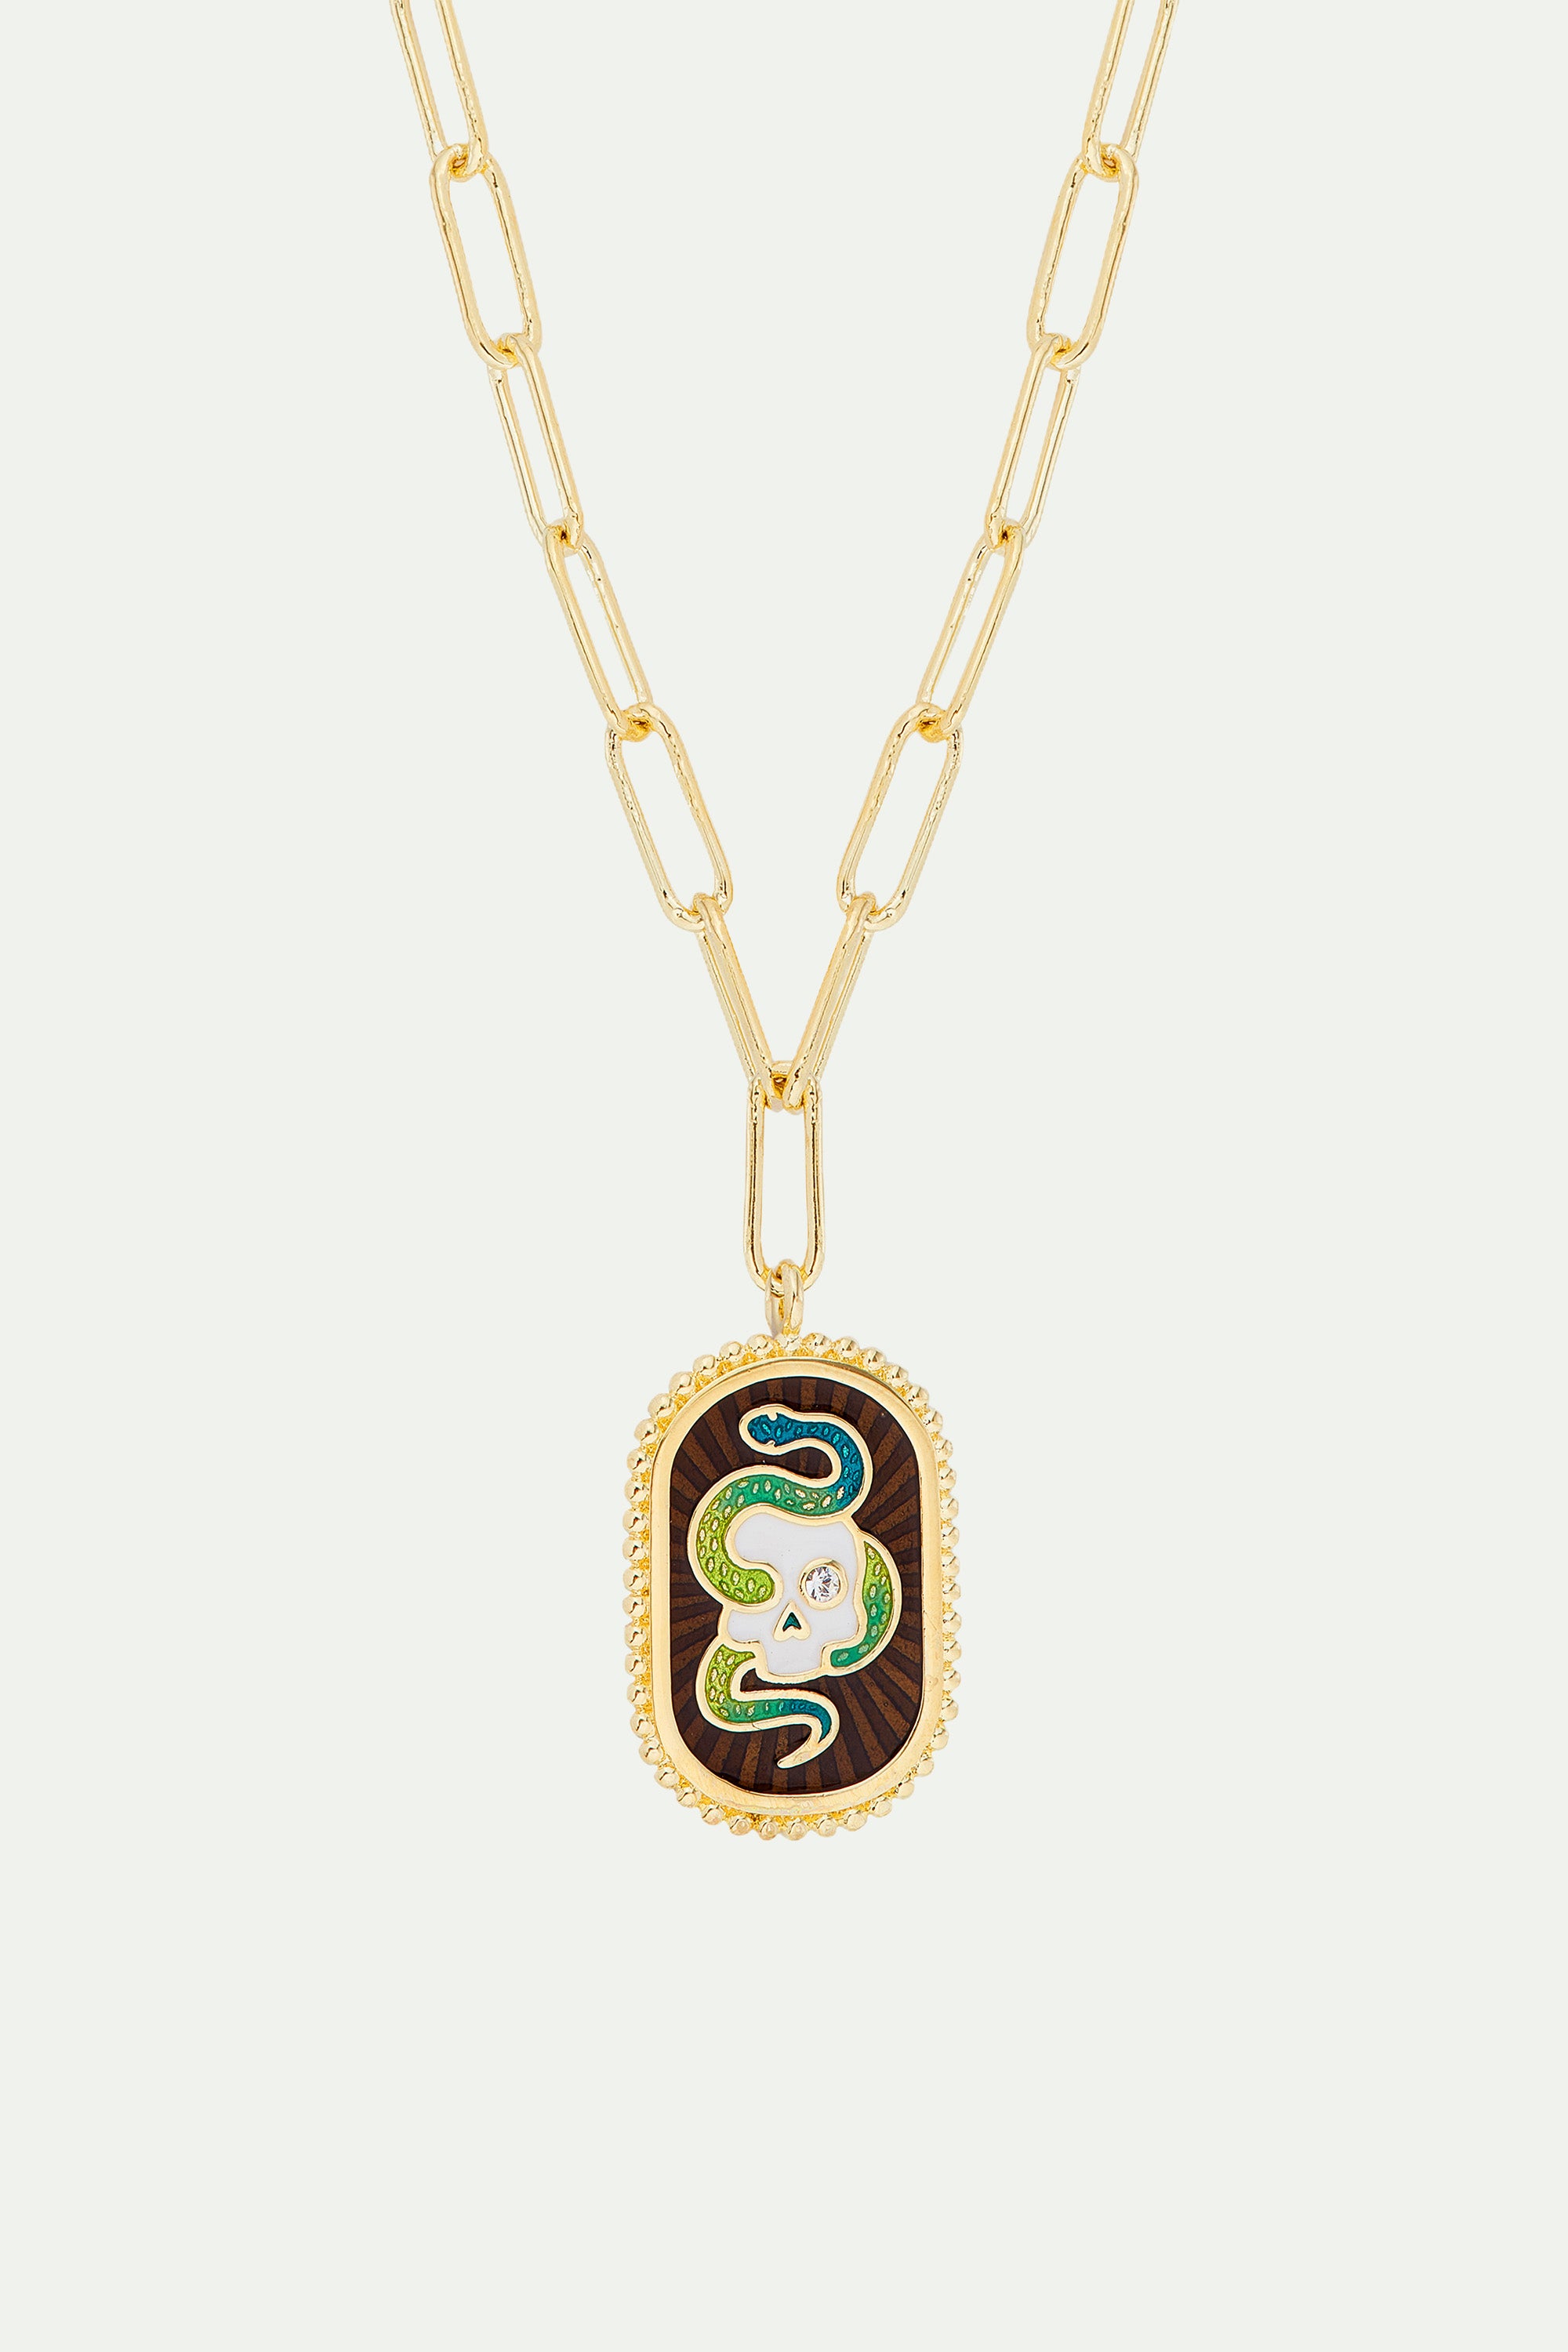 Memento Mori necklace